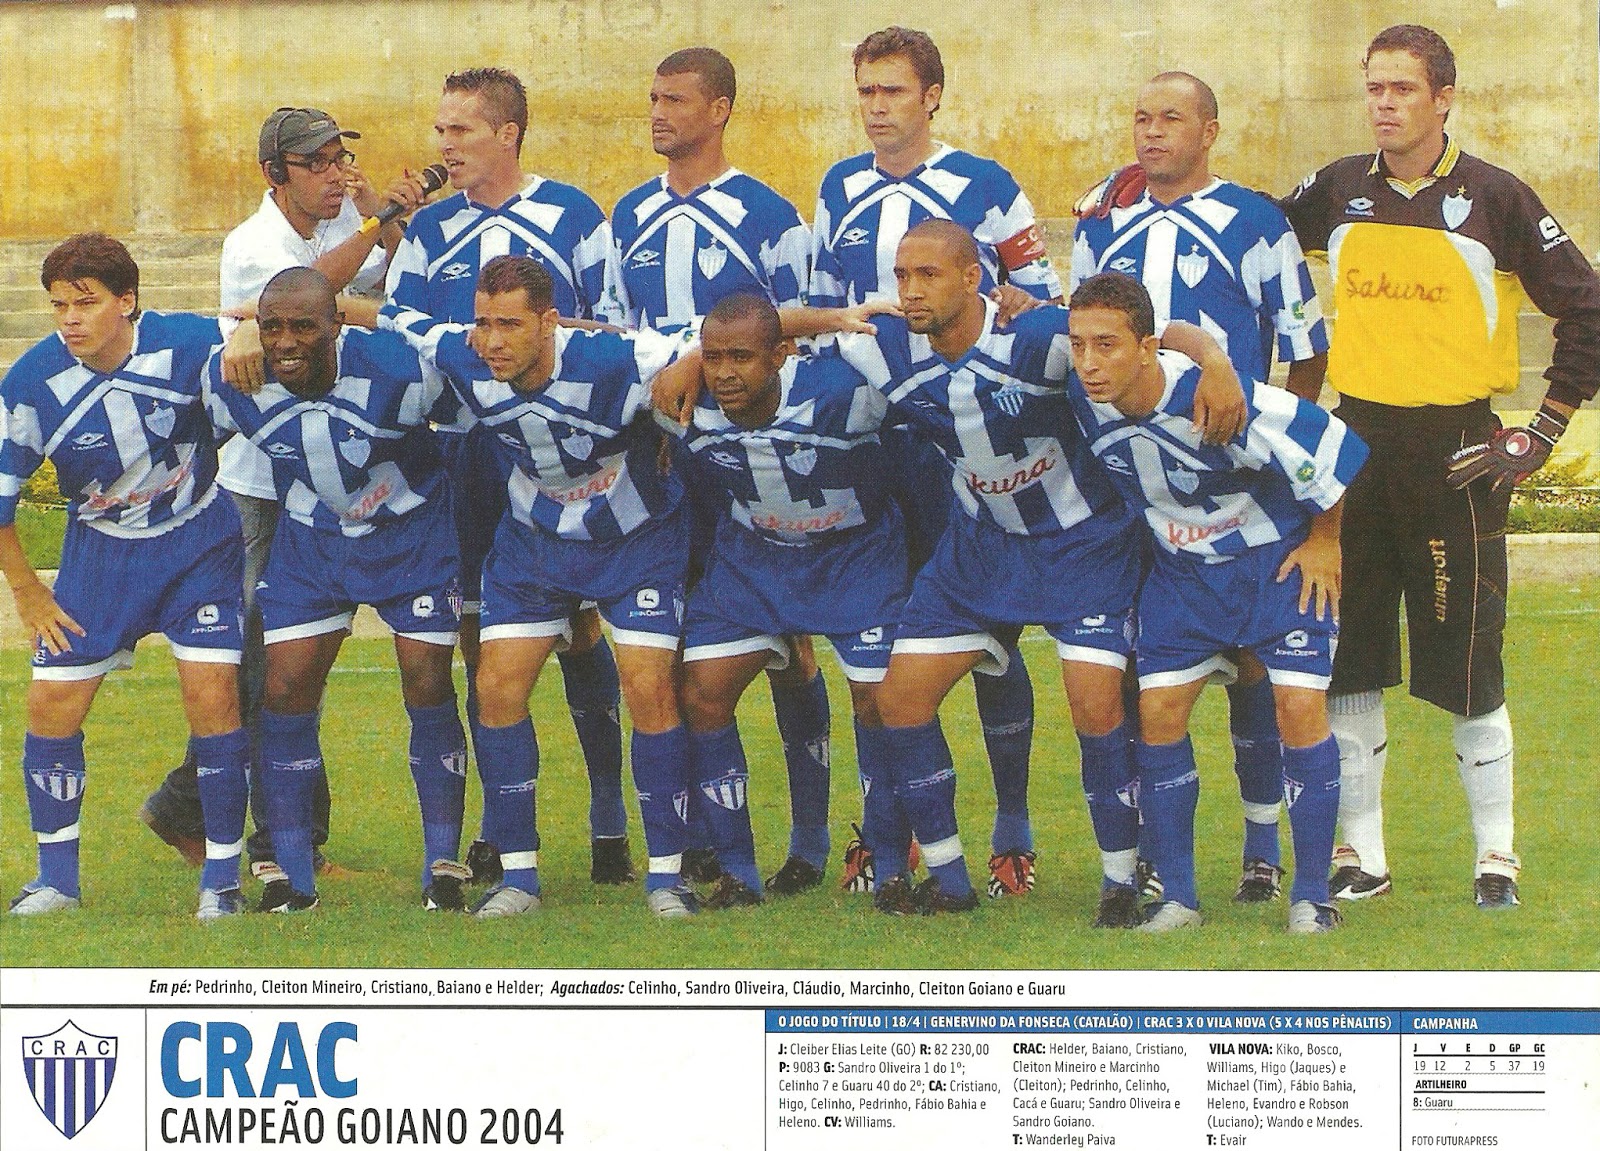 Crac 2004